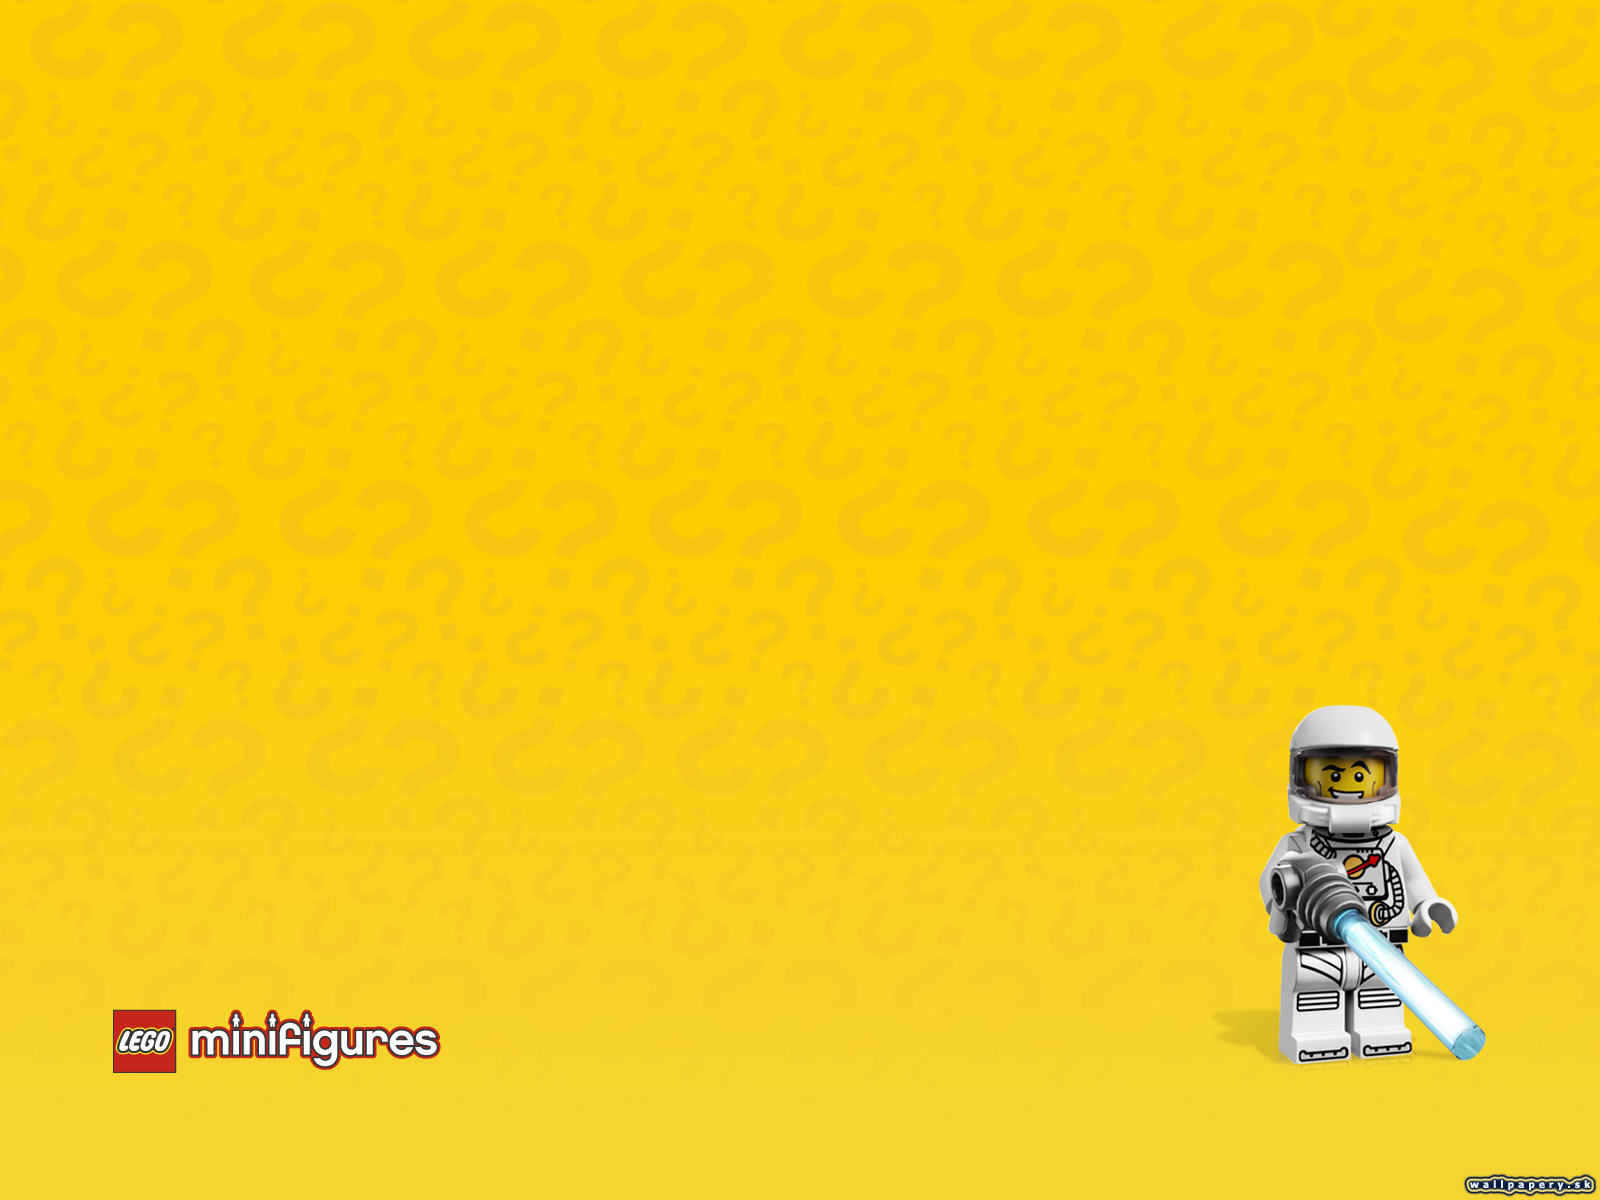 LEGO Minifigures Online - wallpaper 46